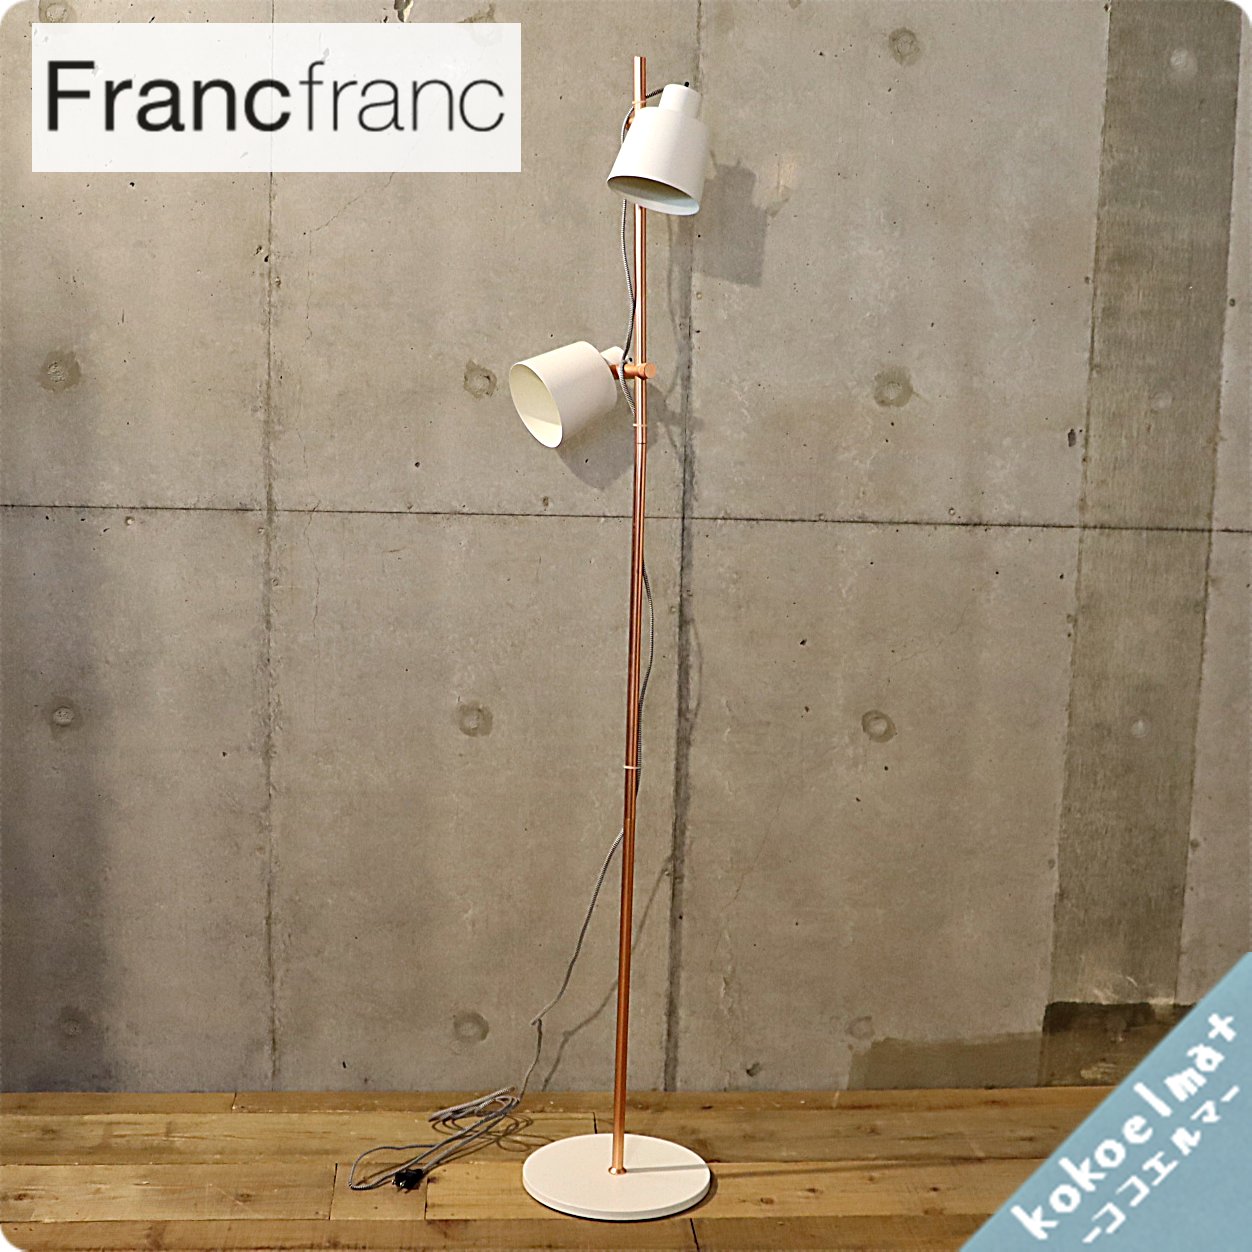 Francfranc(フランフラン)で取り扱われていたフロアーランプです。可動 